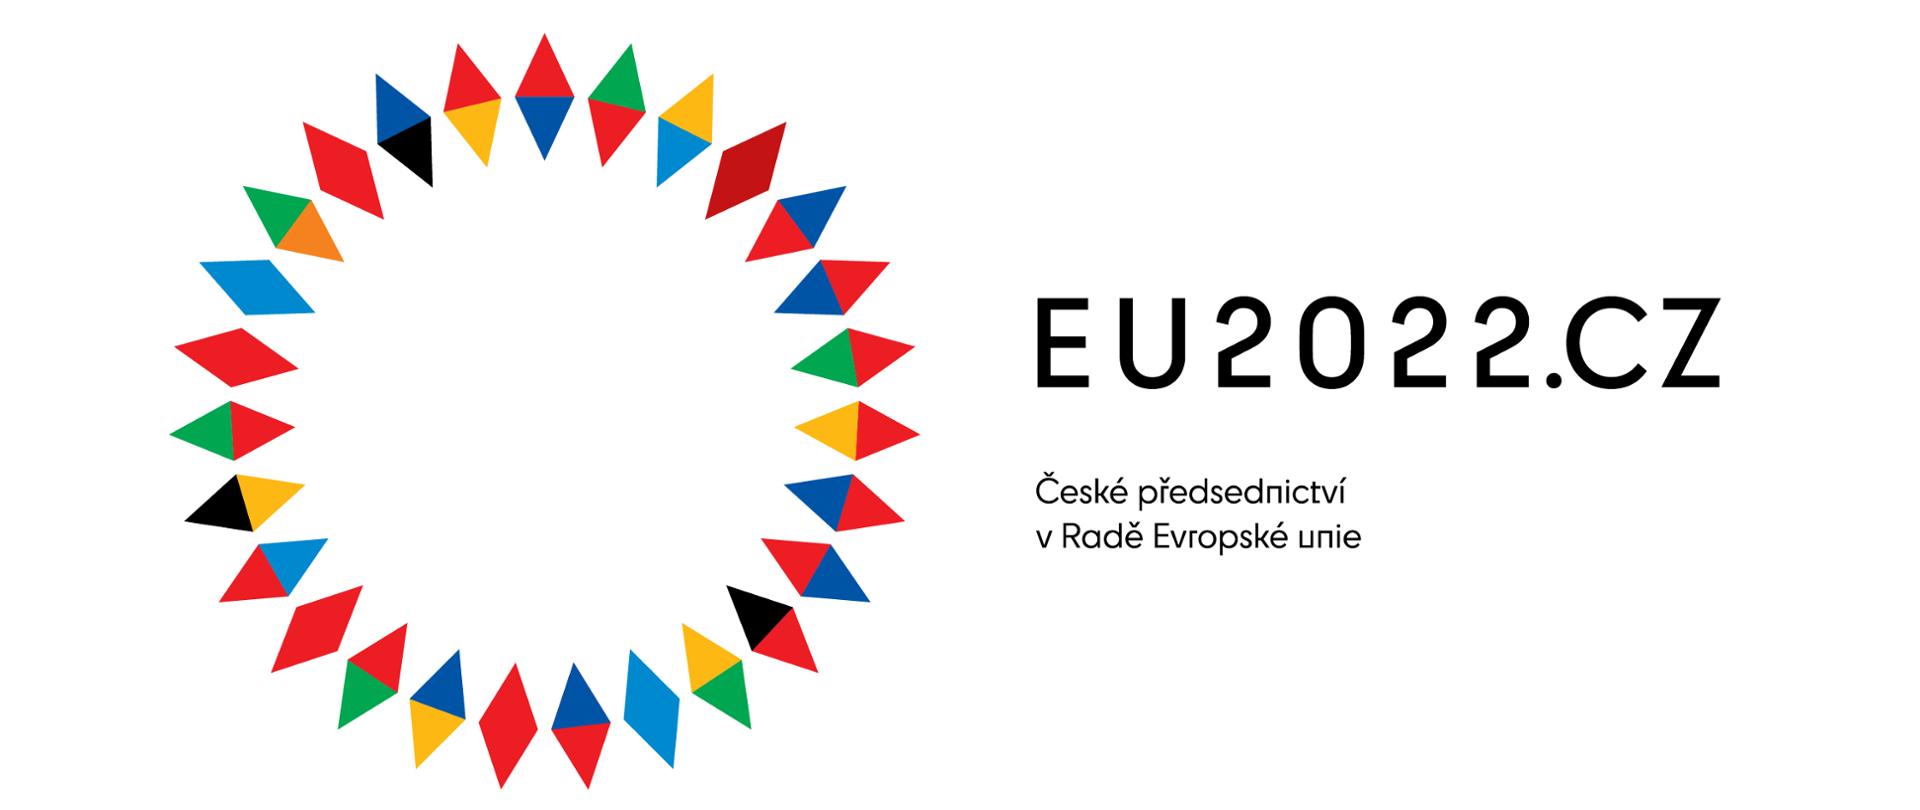 Na grafice znajduje się okrąg złożony z 30 kolorowych rombów. Romby mają kolory: żółty, niebieski, czerwony, zielony, czarny i pomarańczowy. Obok okręgu znajduje się napis EU2022.CZ. Pod napisem mniejszy napis w języku czeskim informujący o prezydencji Czech w Radzie Unii Europejskiej.